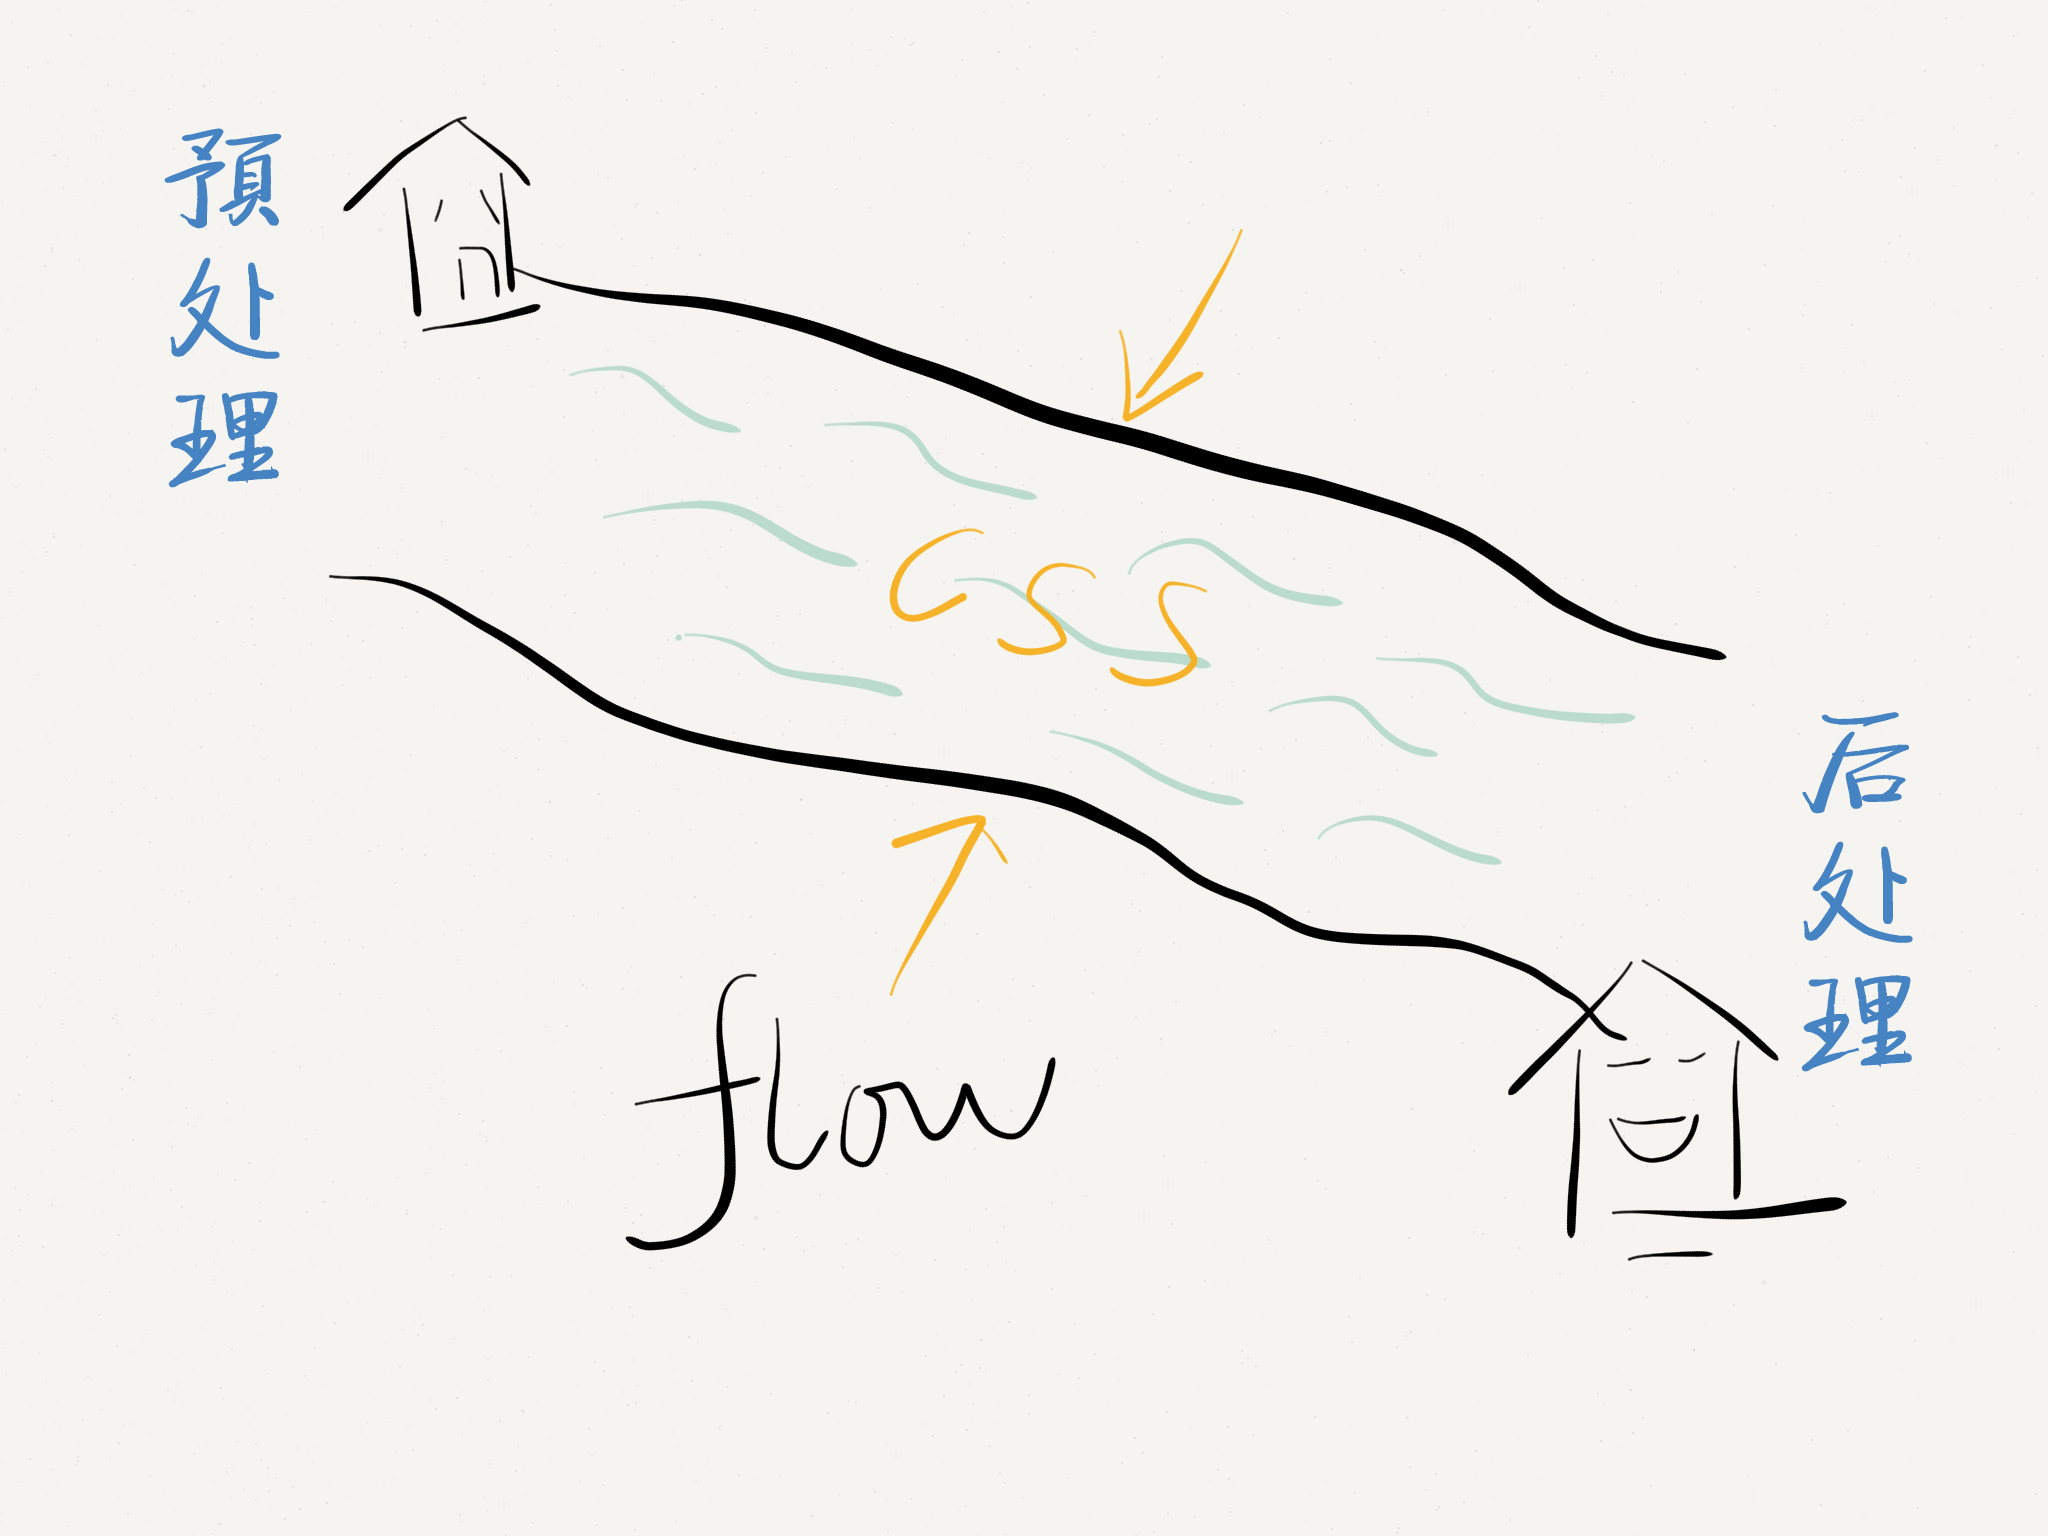 一条河流从左上角流至右下角：代表CSS的工作流程。上游有个房子，代表预处理器。下游也有个房子，代表后处理器